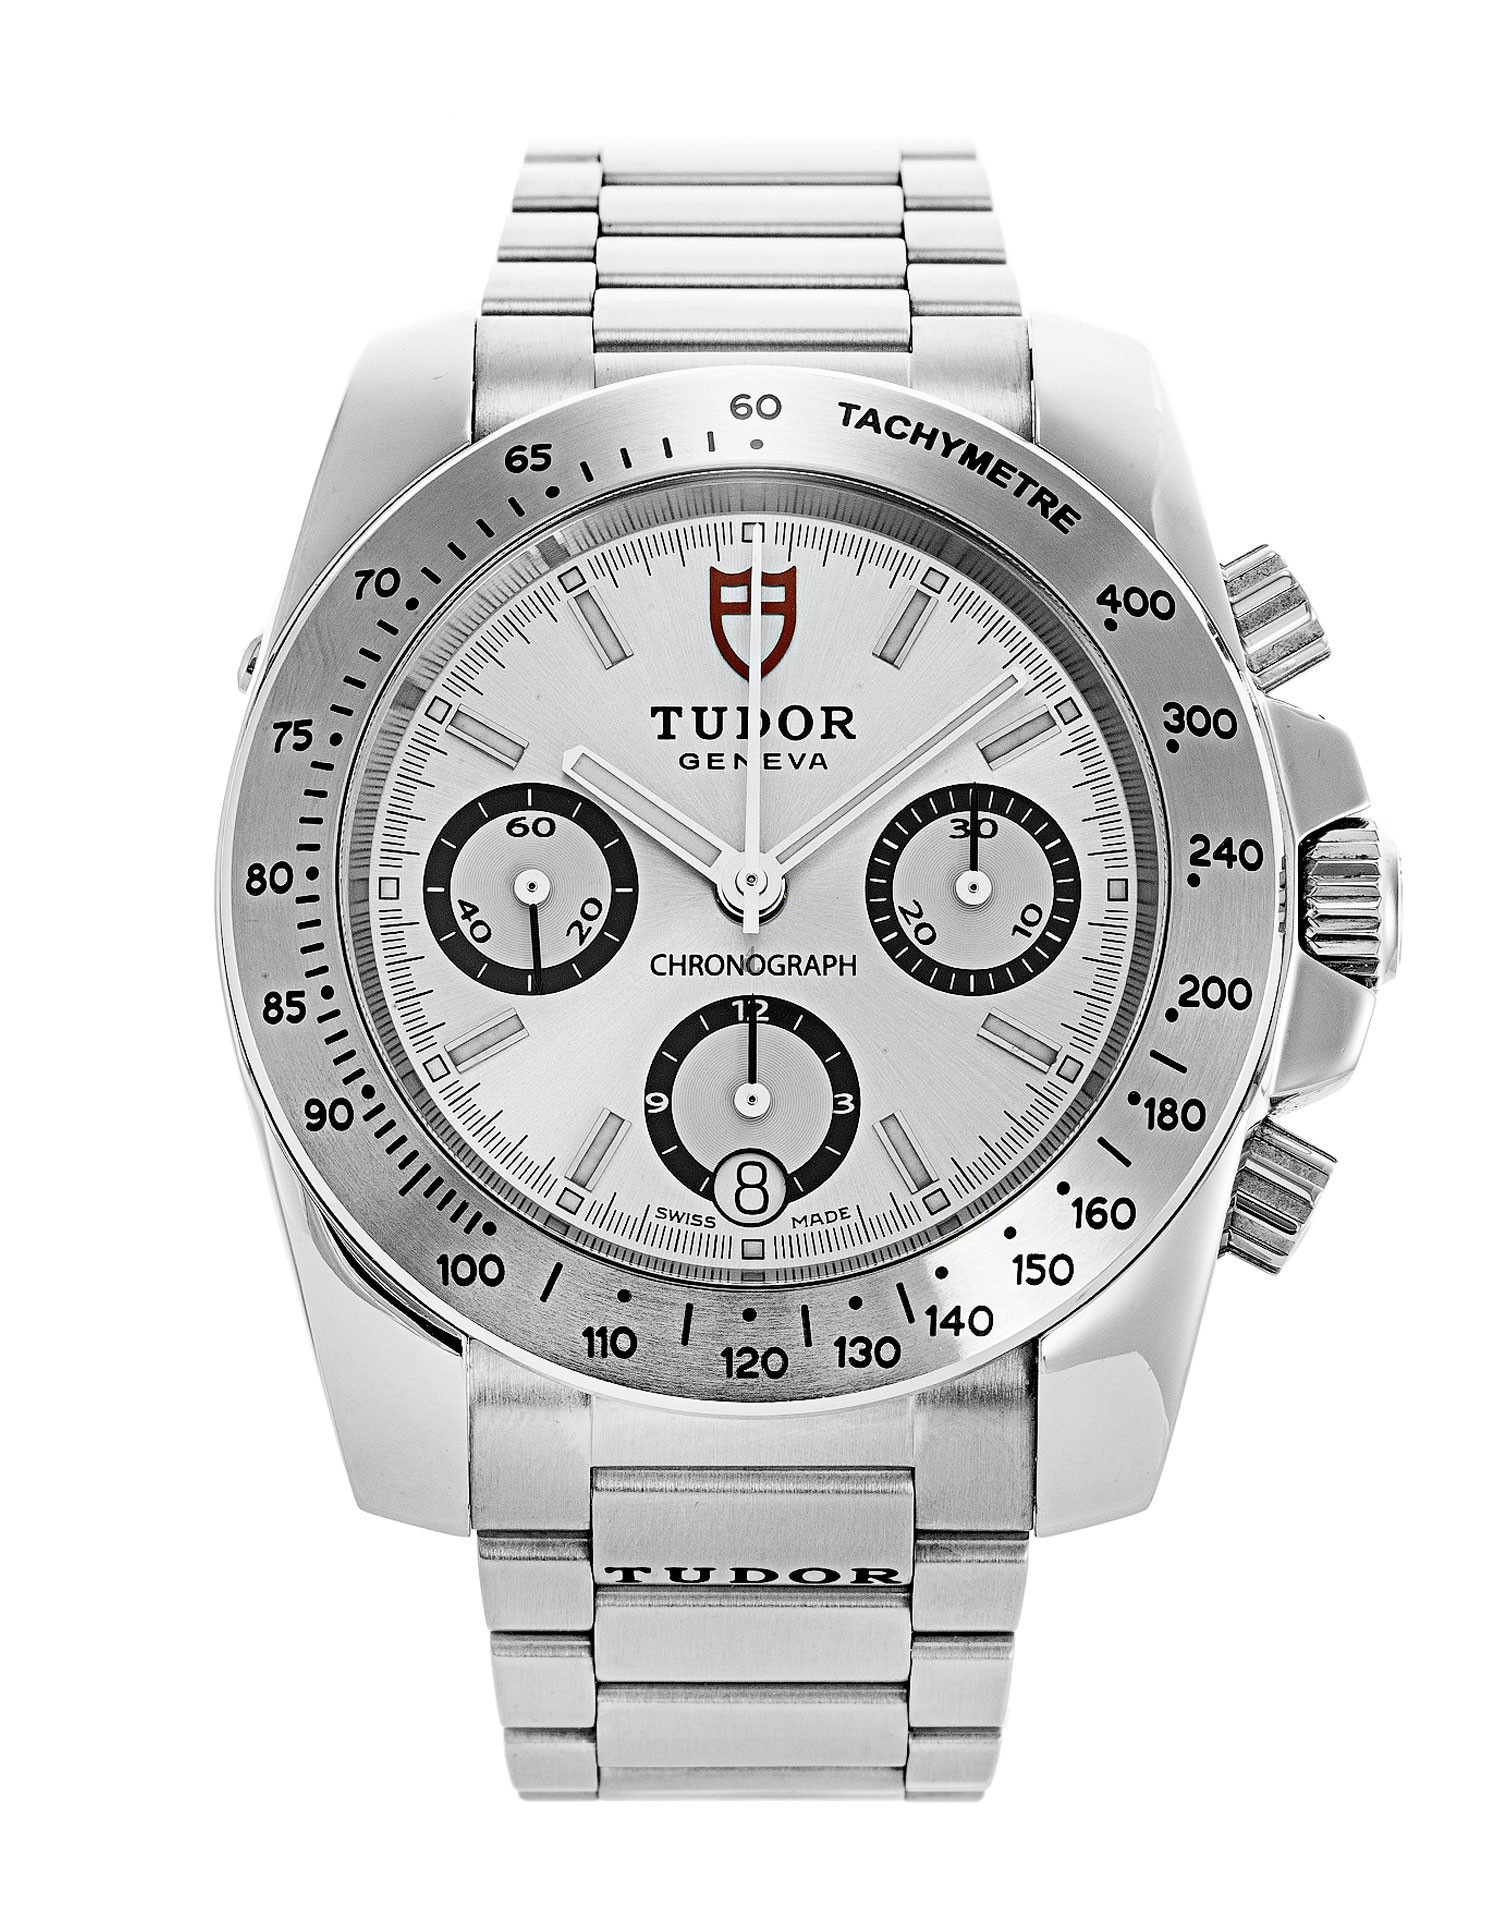 Replica Tudor Sport Chronograph 20300-95000